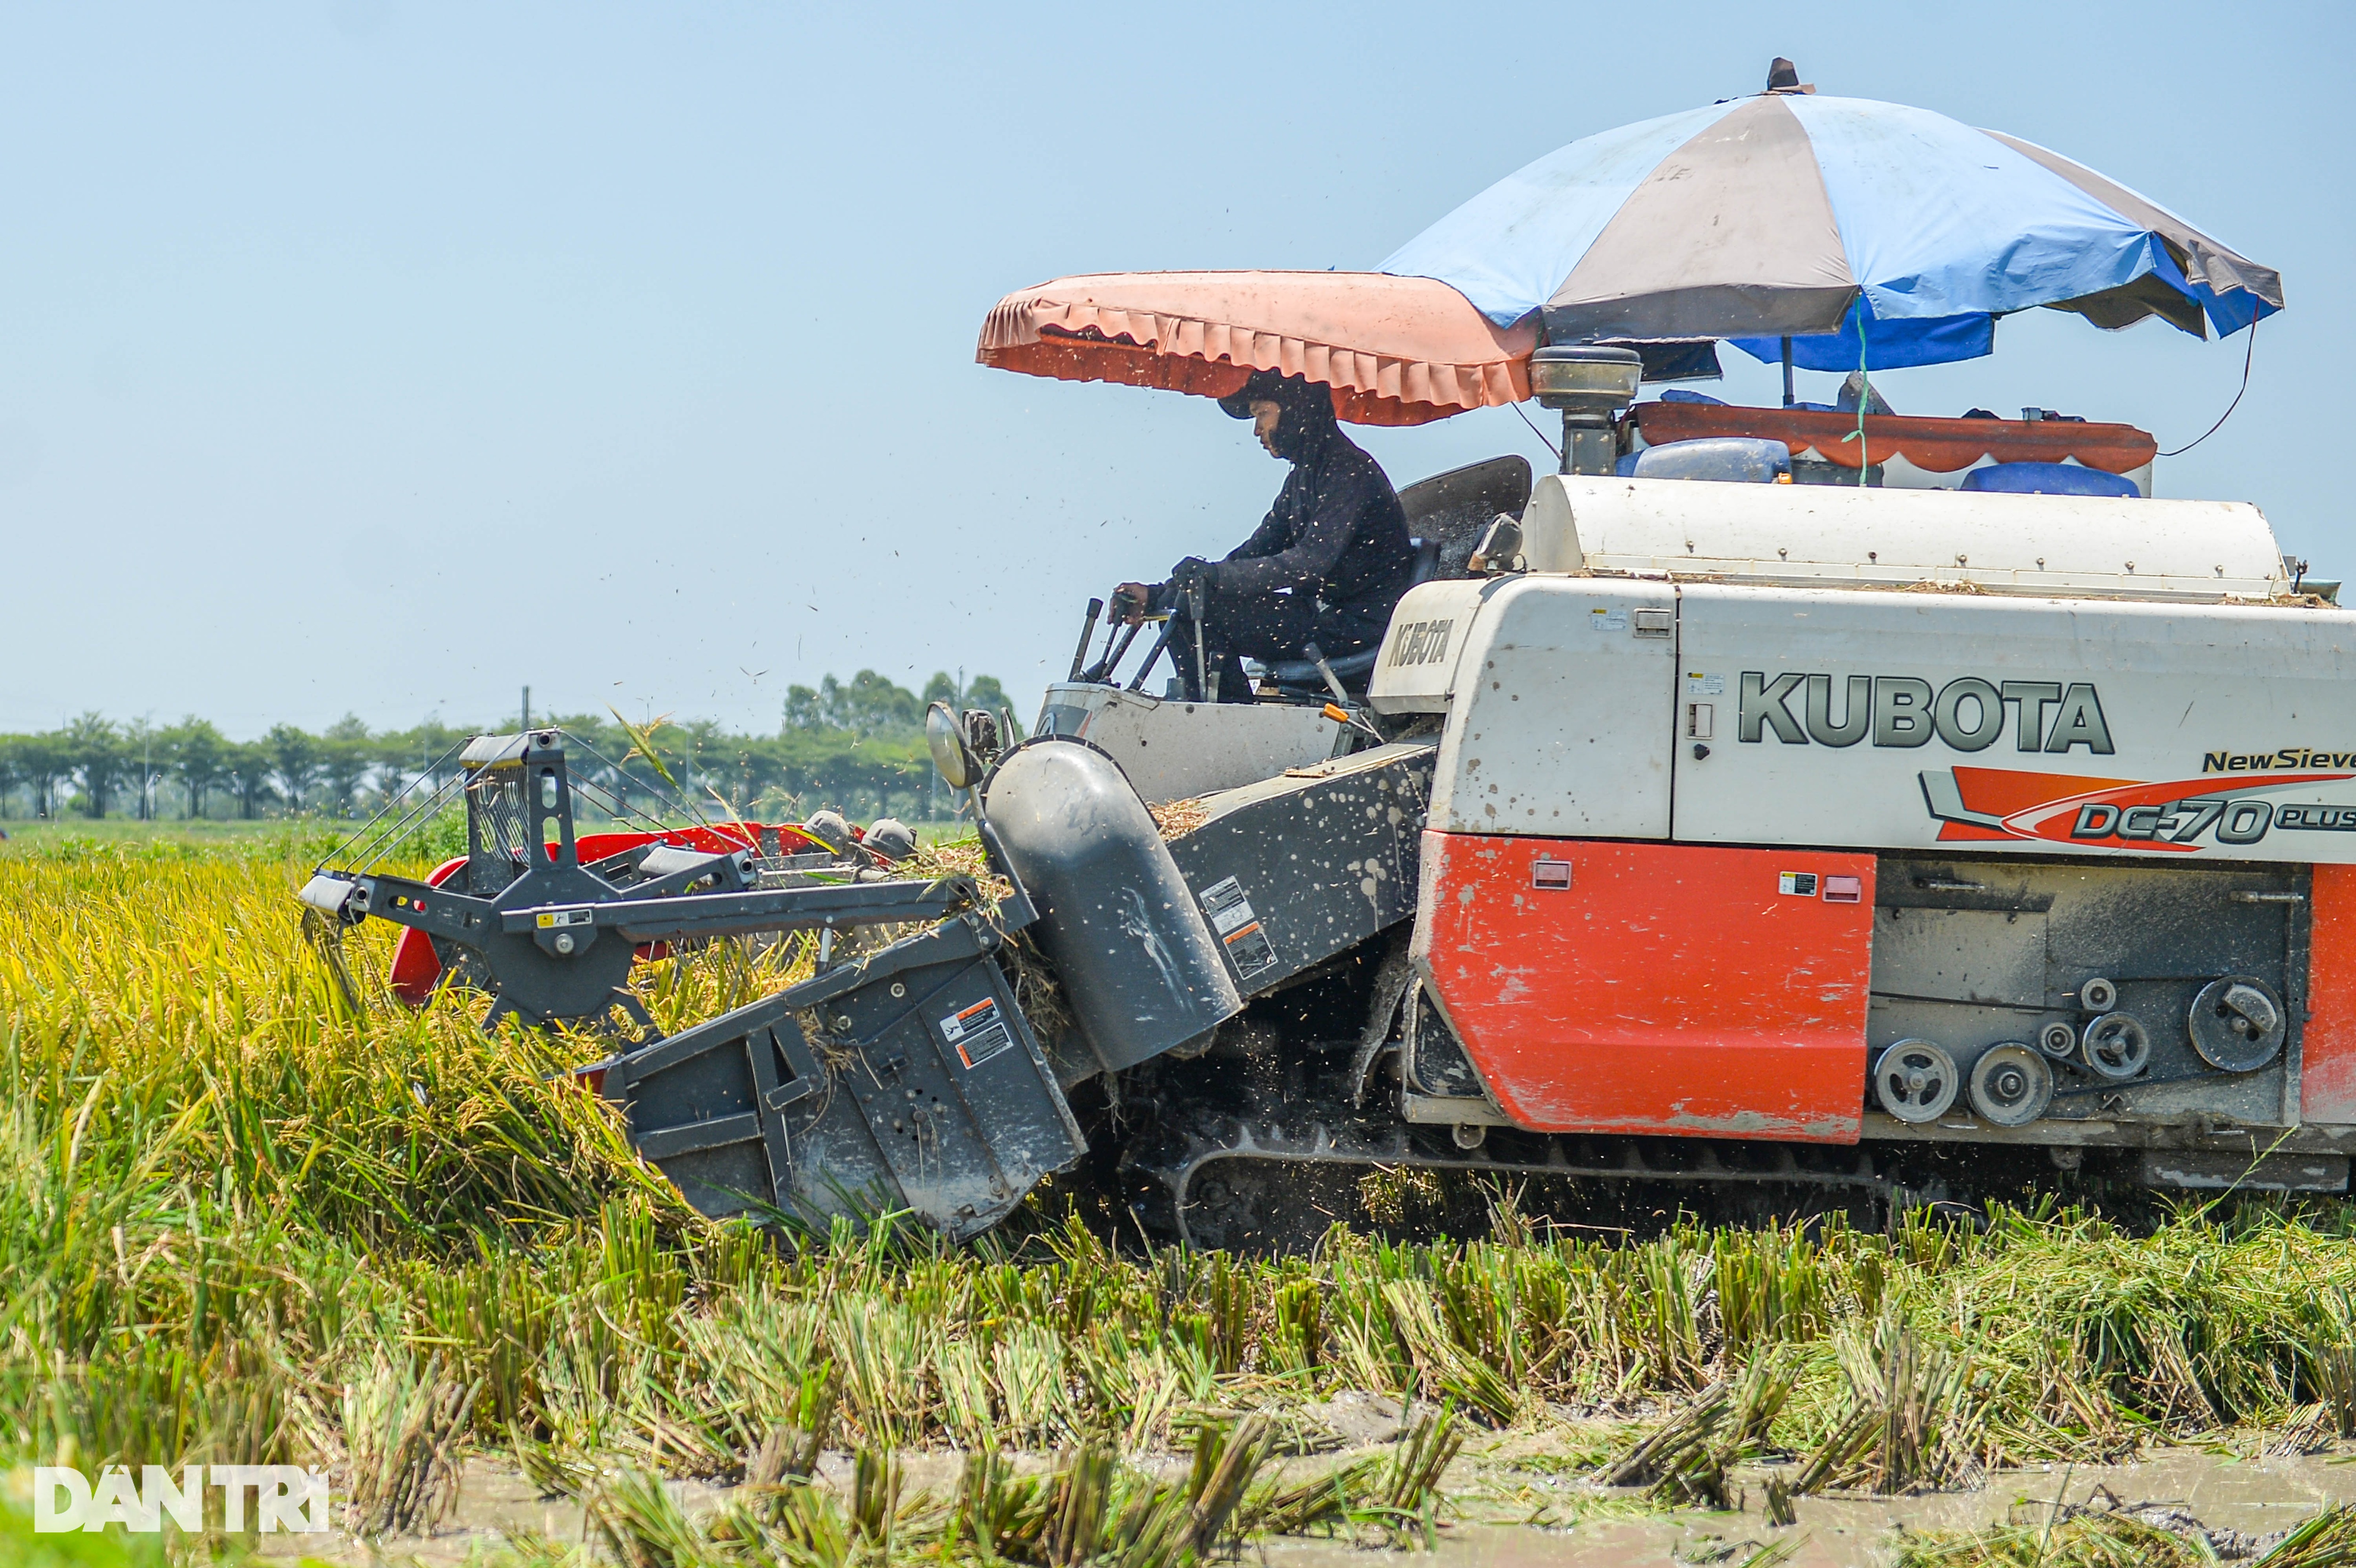 Hà Nội: Đội nắng gặt lúa thông trưa, chủ máy đút túi 5 triệu mỗi ngày - 5